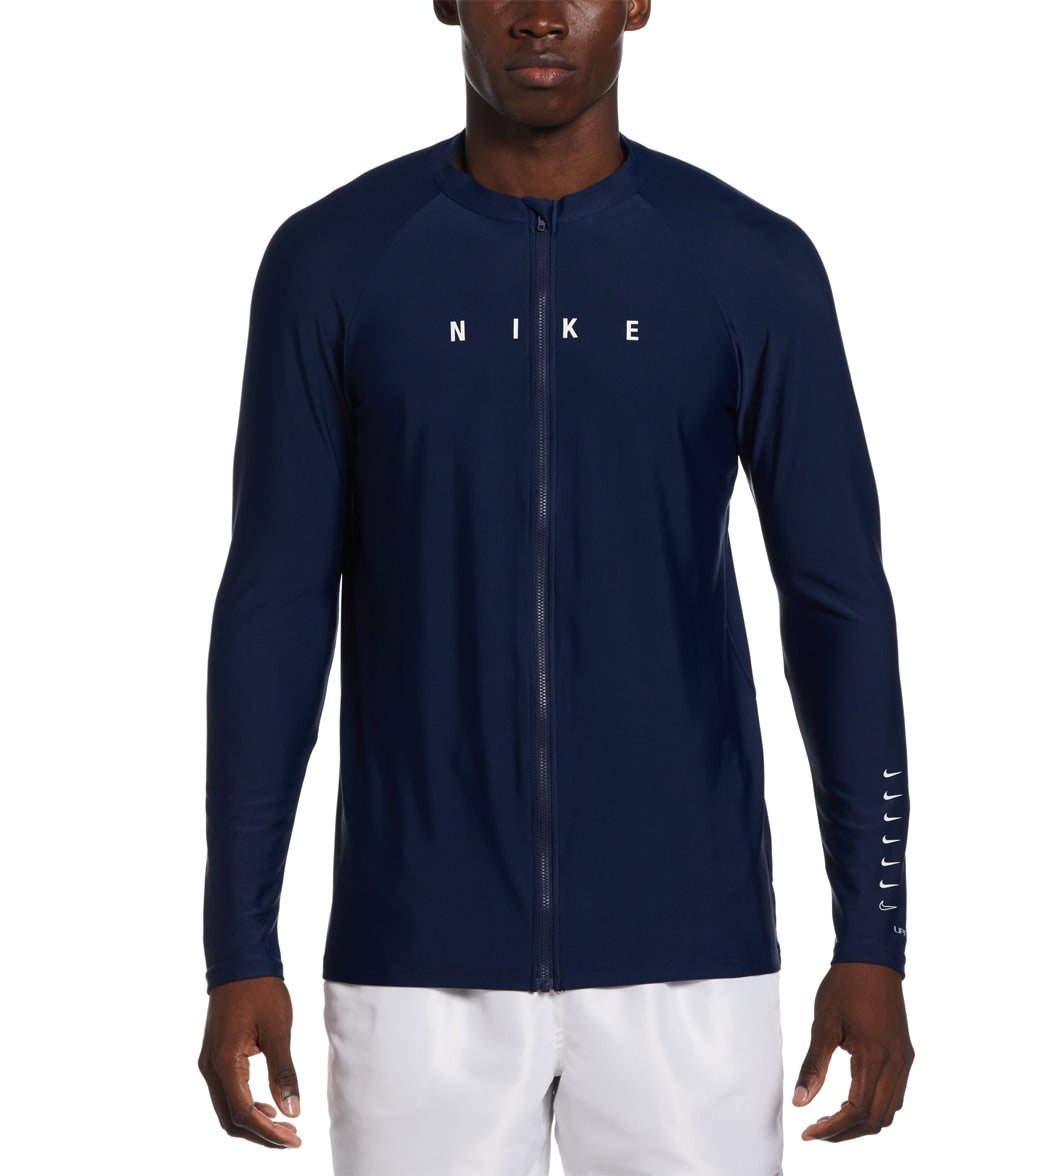 Nike Mens Hydro UV Dri Fit Long Sleeve Zip Top